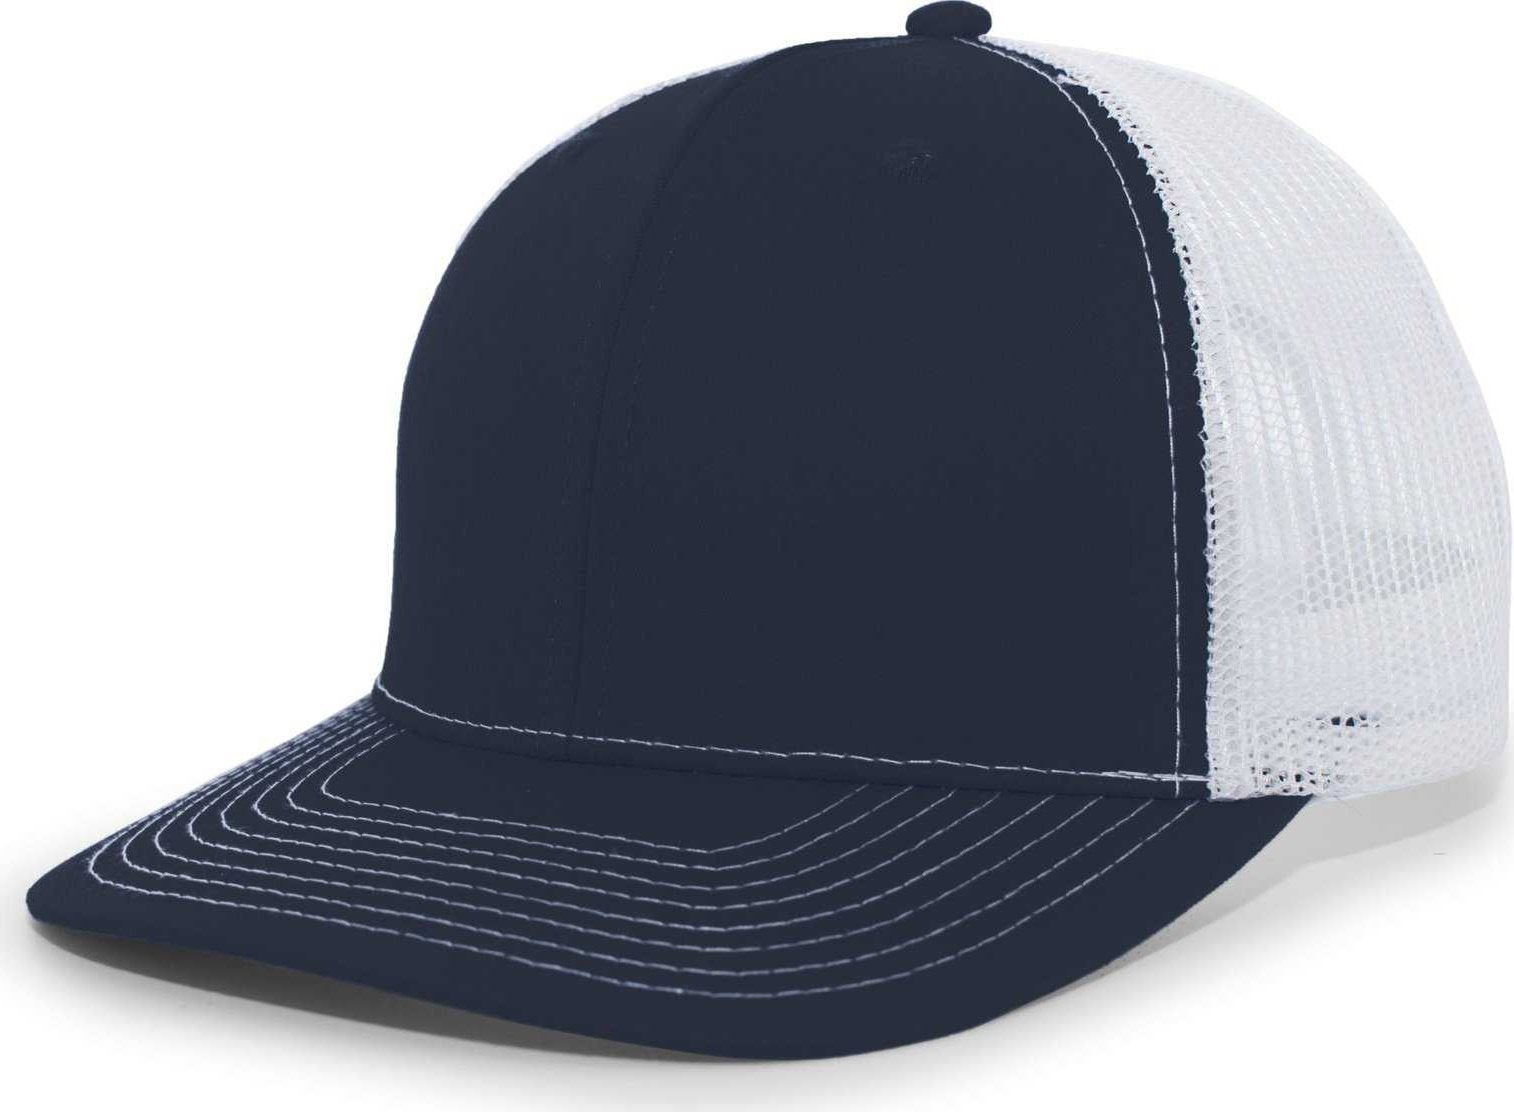 Pacific Headwear PE10 Trucker Snapback Cap - Navy White - HIT A Double